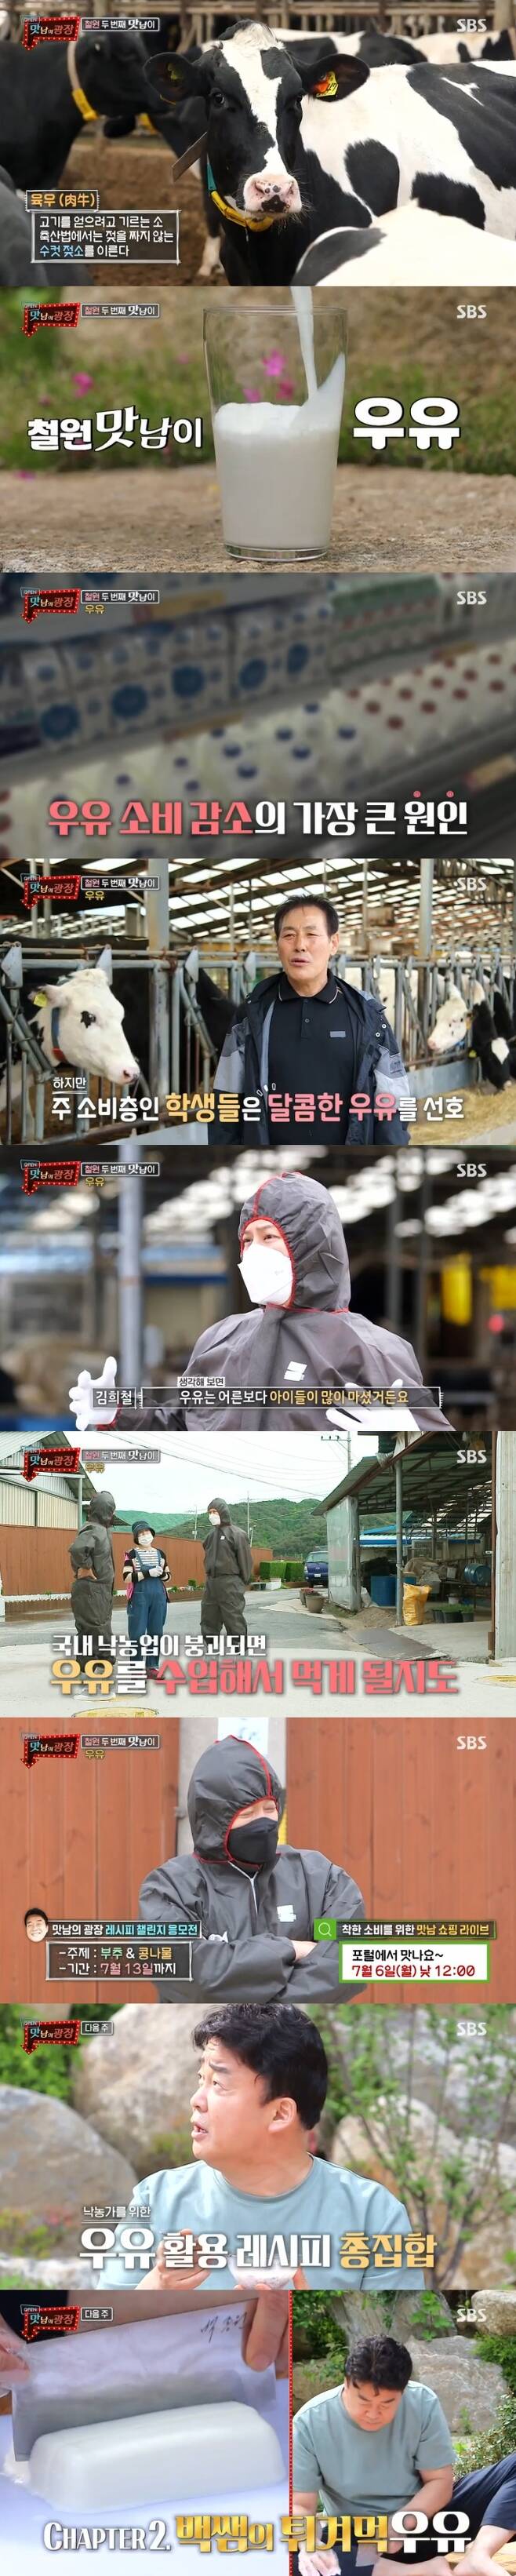 2일 방송된 SBS 예능 프로그램 '맛남의 광장'에서는 젖소 농가에 방문한 백종원이 출연해 국내 낙농업이 붕괴할 수 있다고 우려했다. 사진=SBS '맛남의 광장'방송 캡처